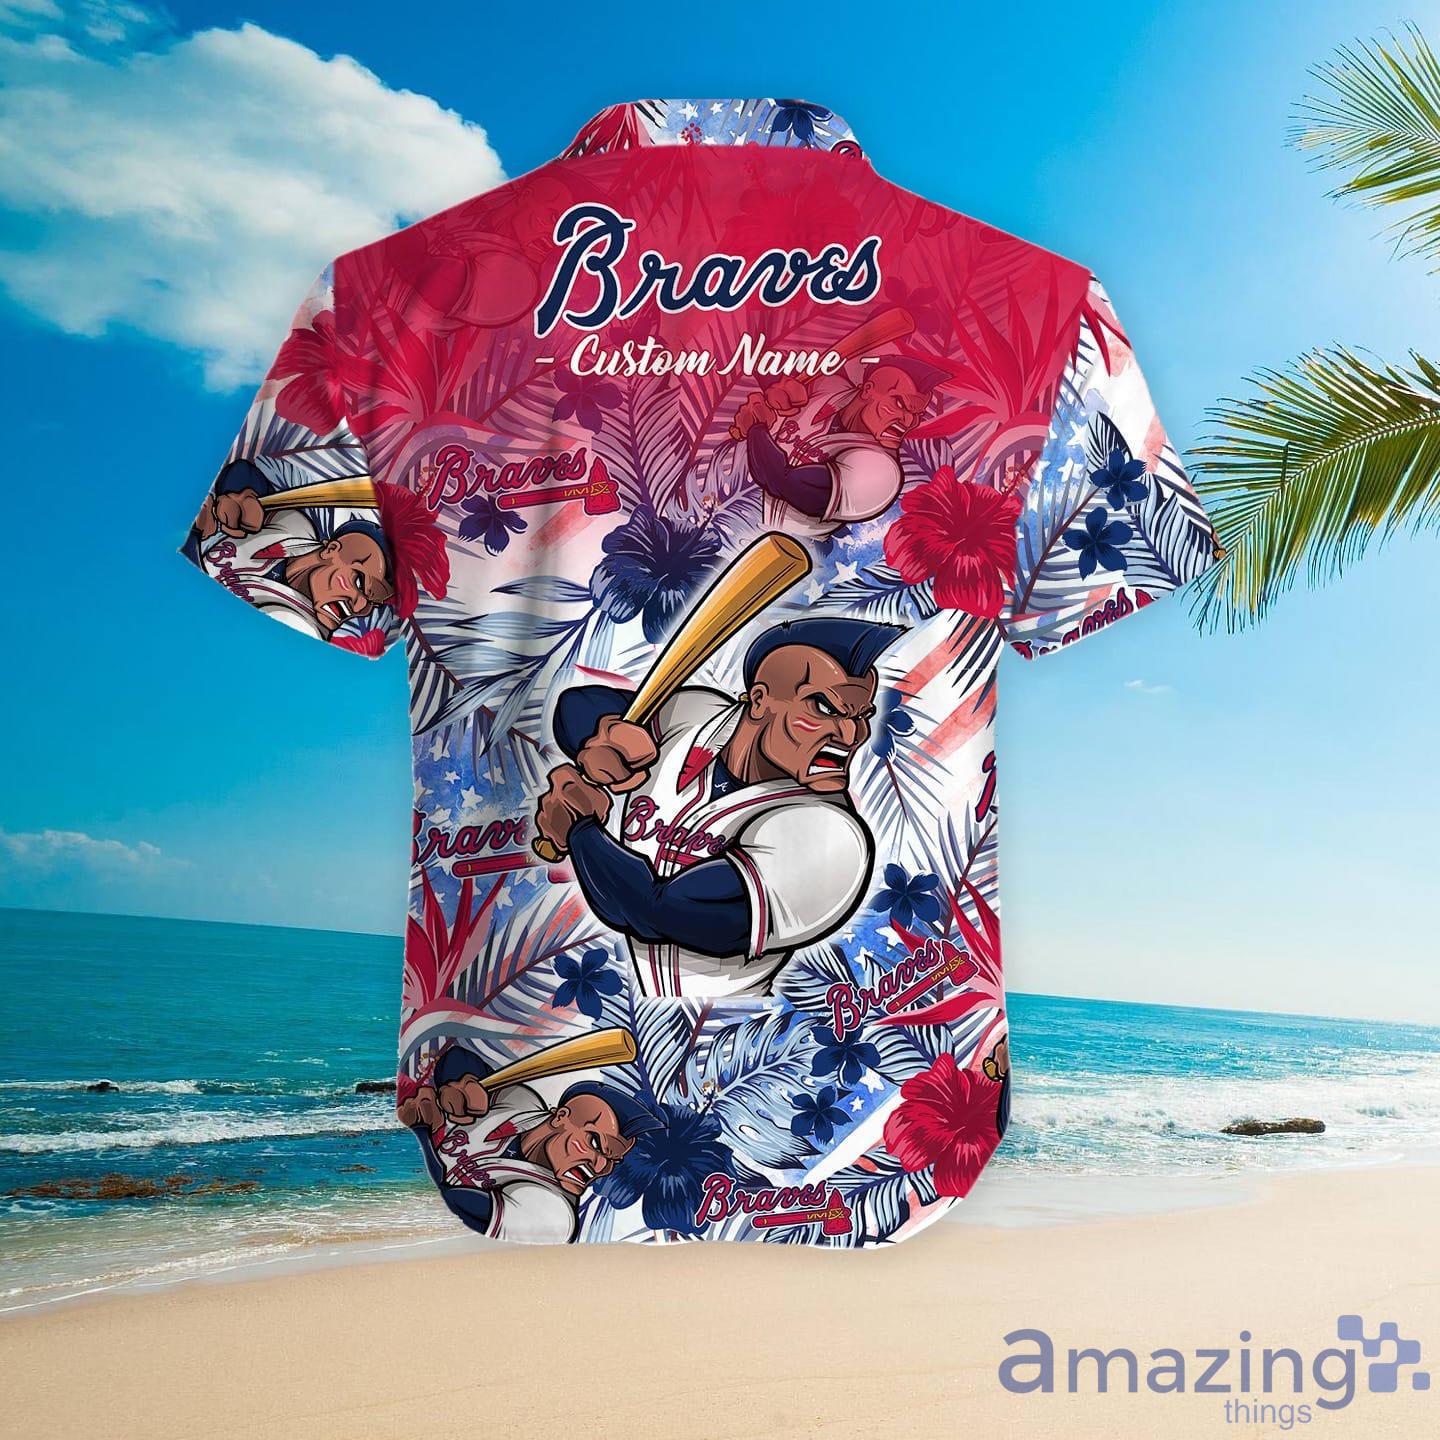 Atlanta Braves Tommy Bahama Aloha America T-Shirt